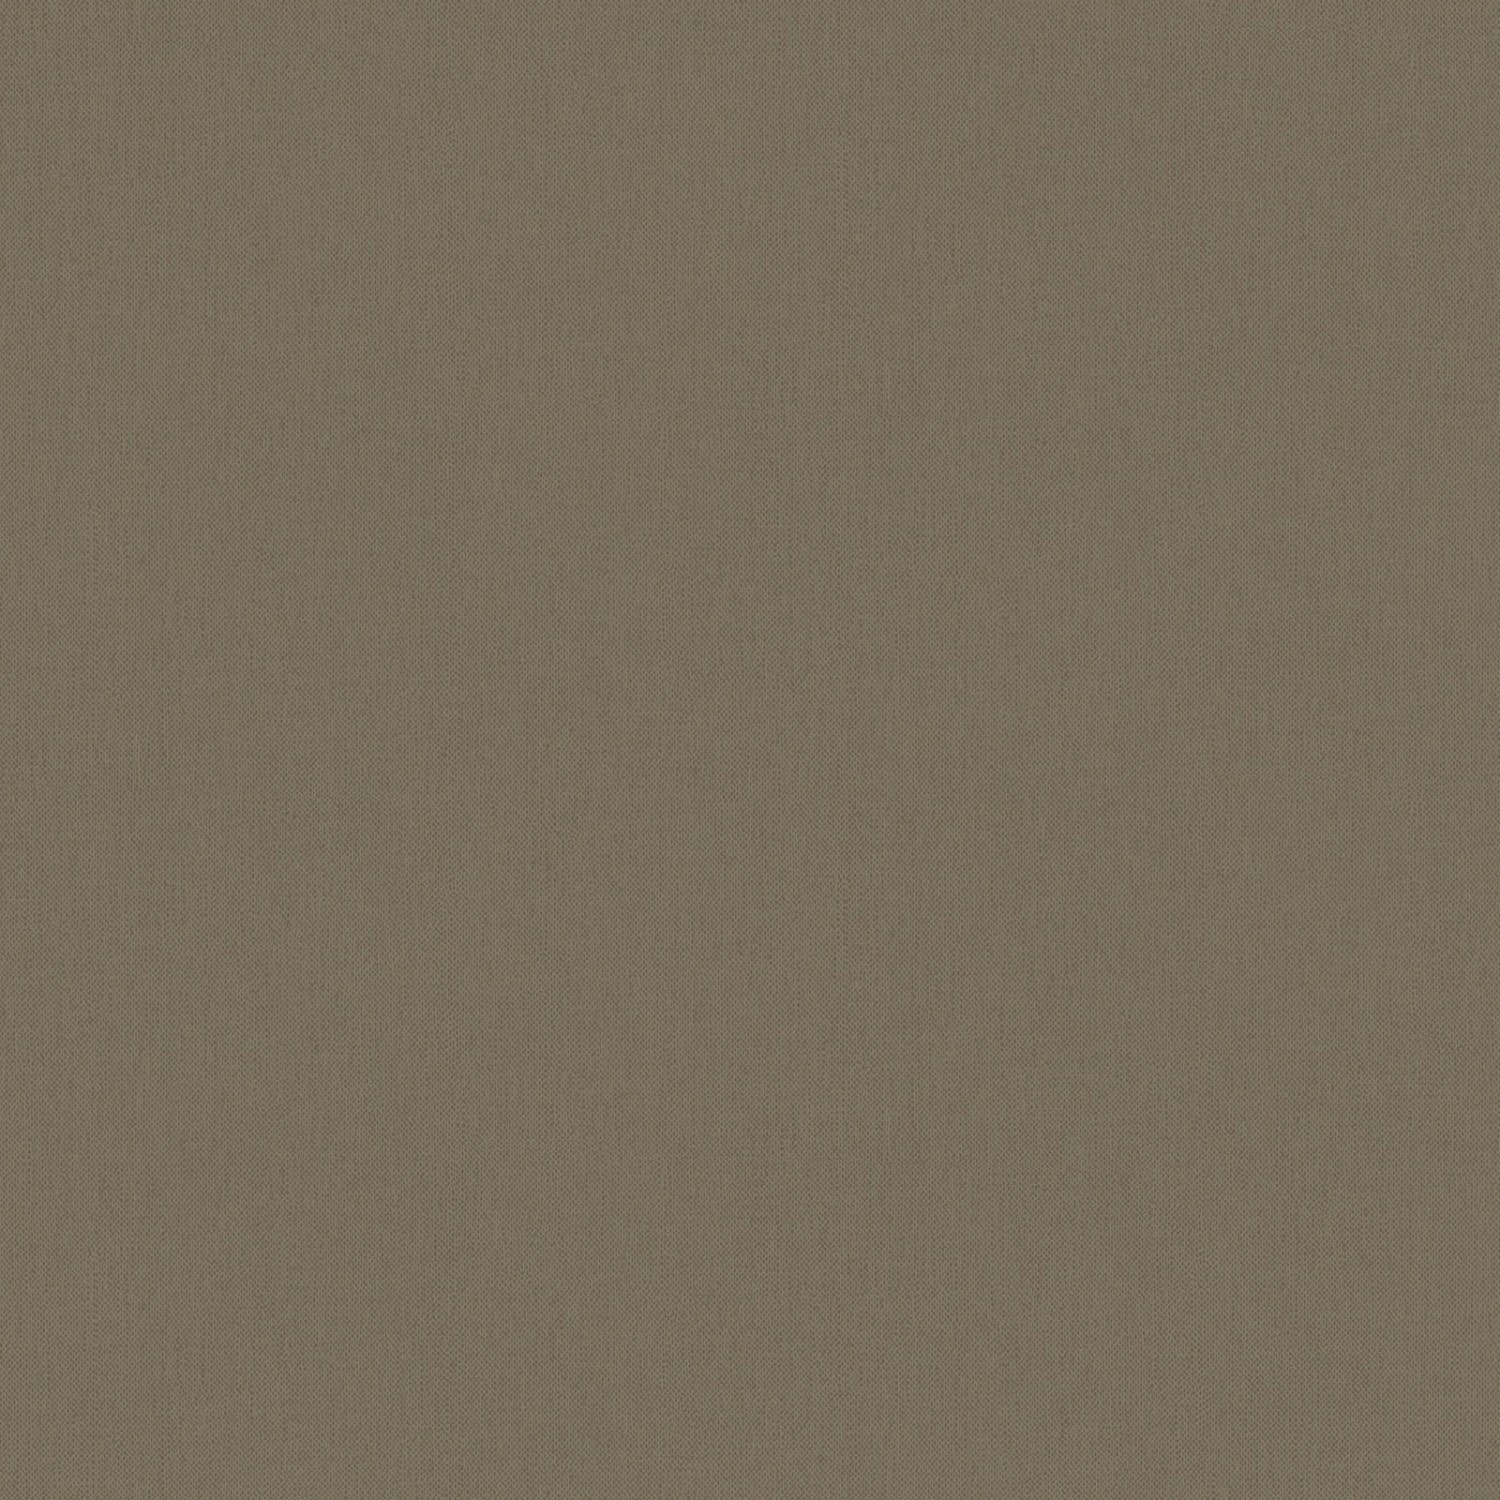 Bricoflor Dunkelbraune Tapete Einfarbig Wohnzimmer und Esszimmer Vliestapete in Braun Textiloptik Wandtapete im Dezenten Uni Stil von Bricoflor